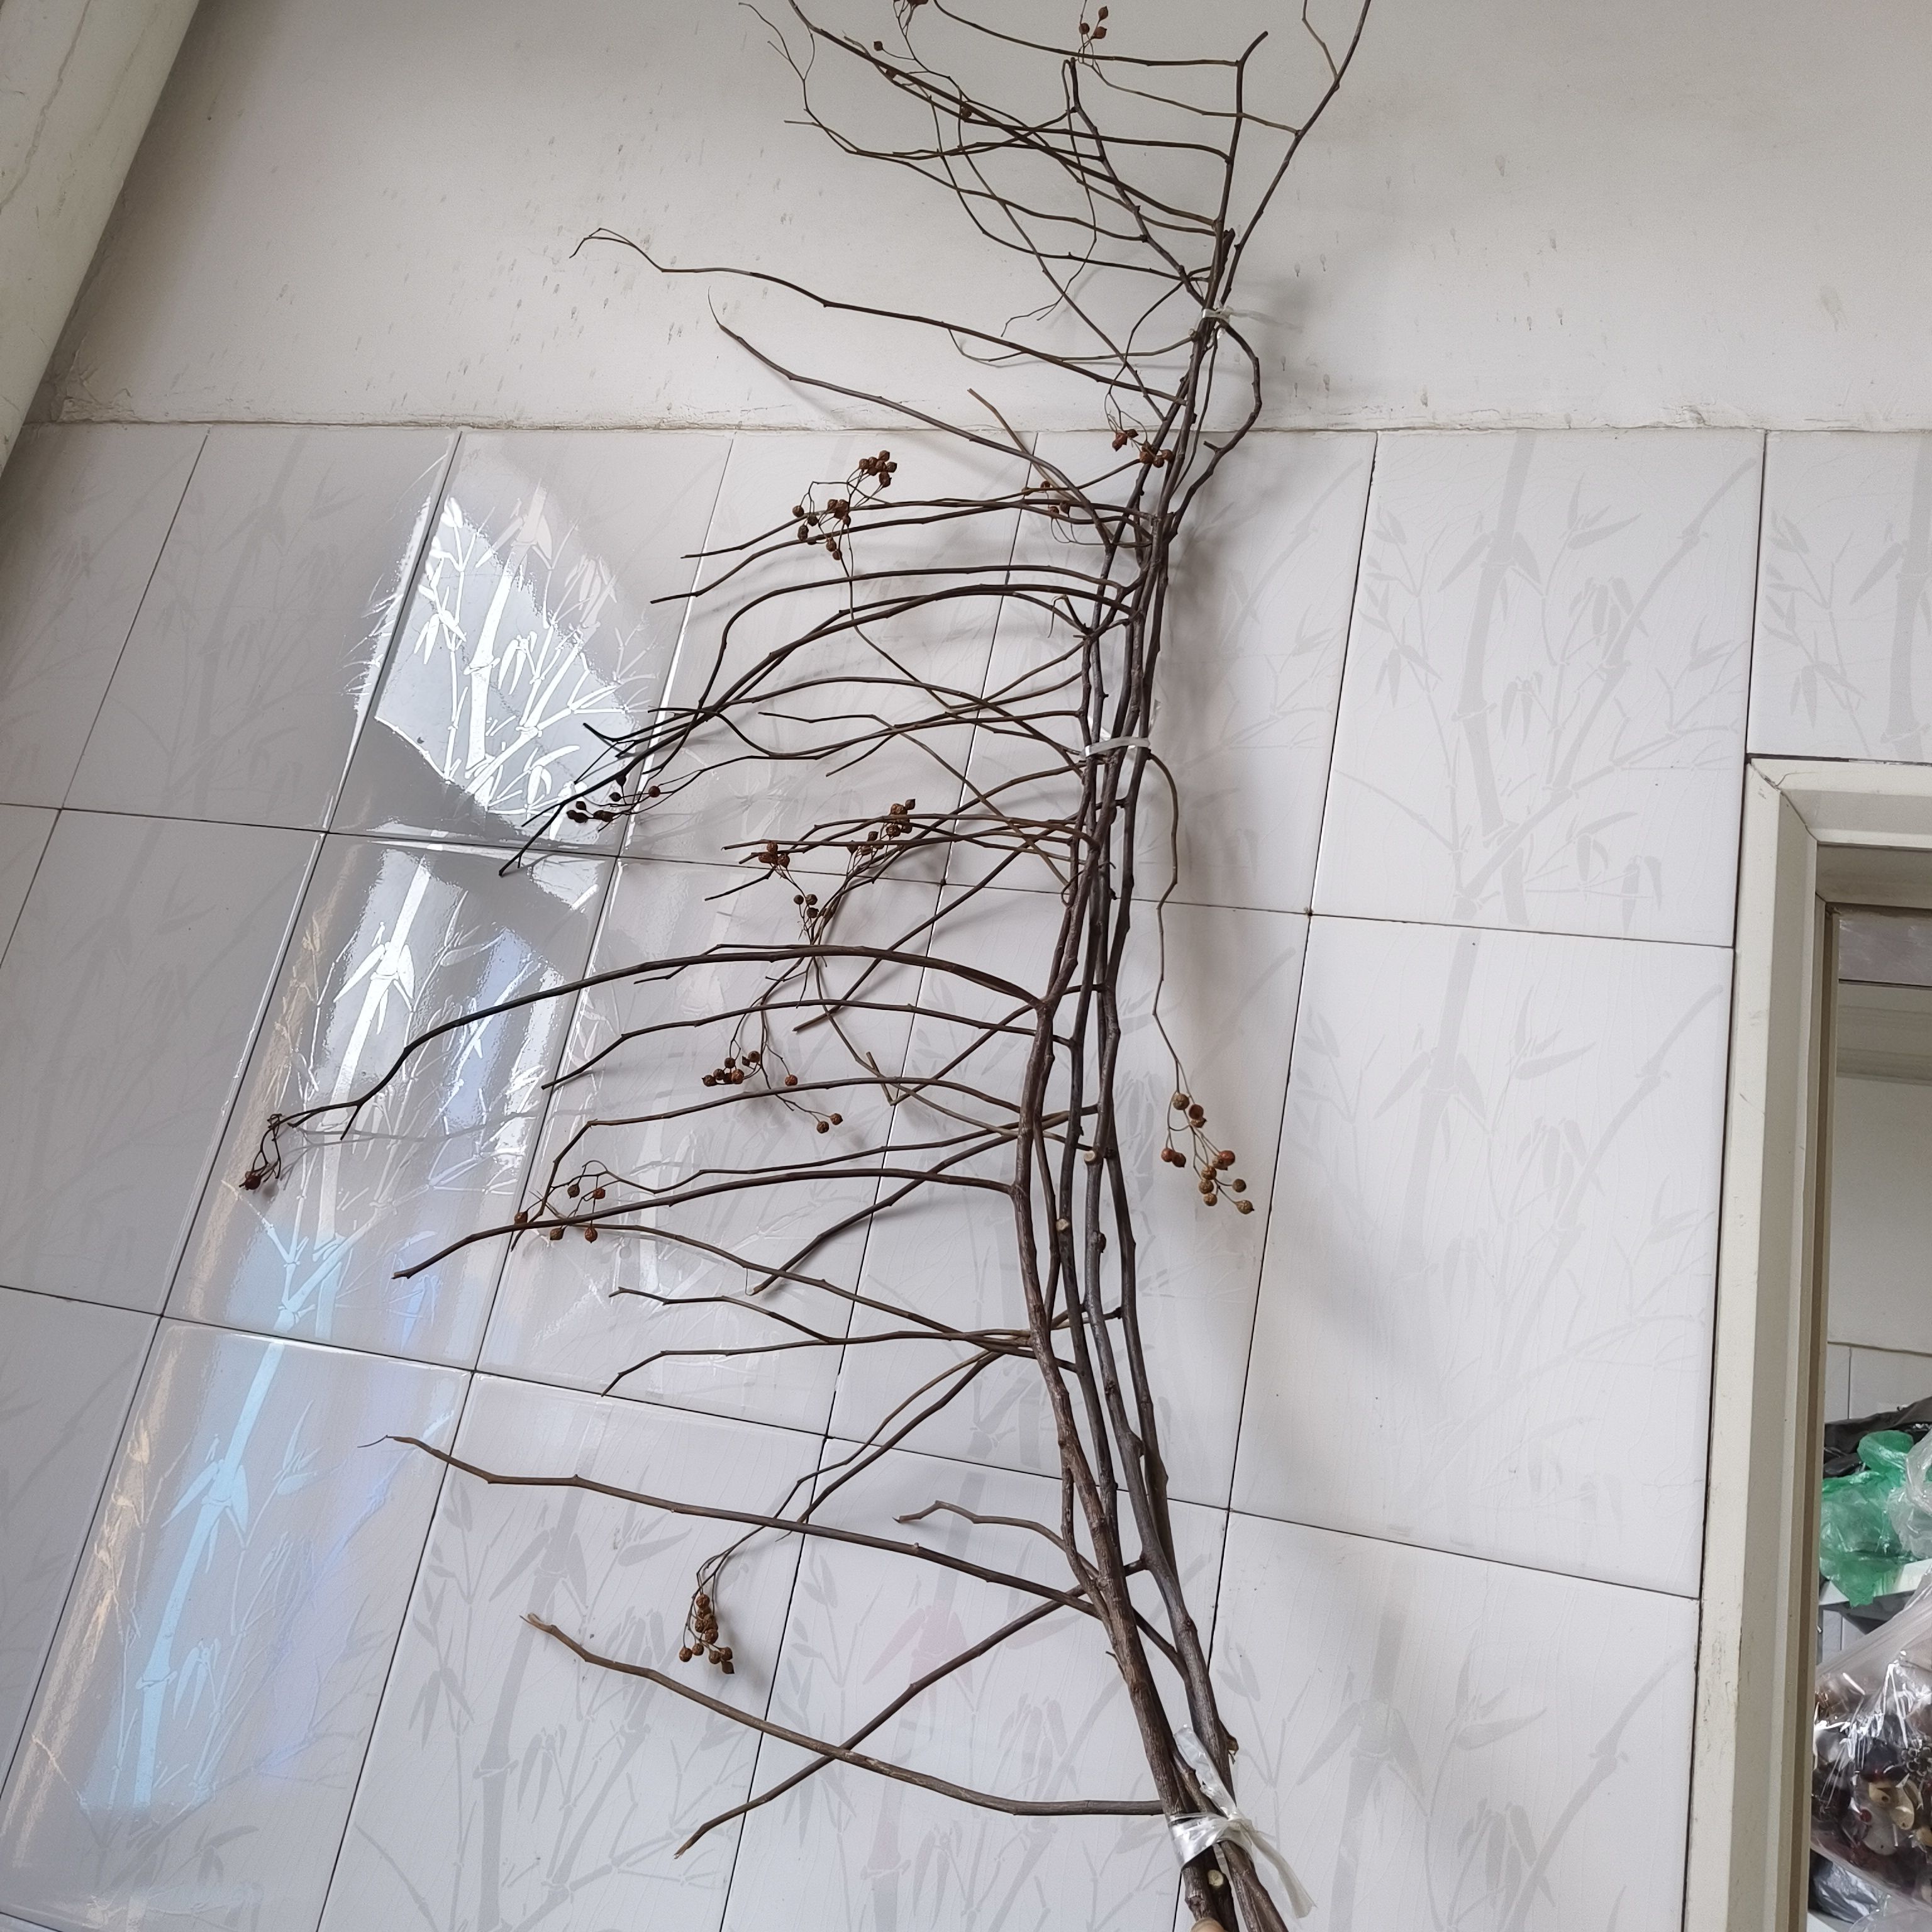 天然树枝艺术拍摄道具挂件装饰画diy材料干树枝约80厘米